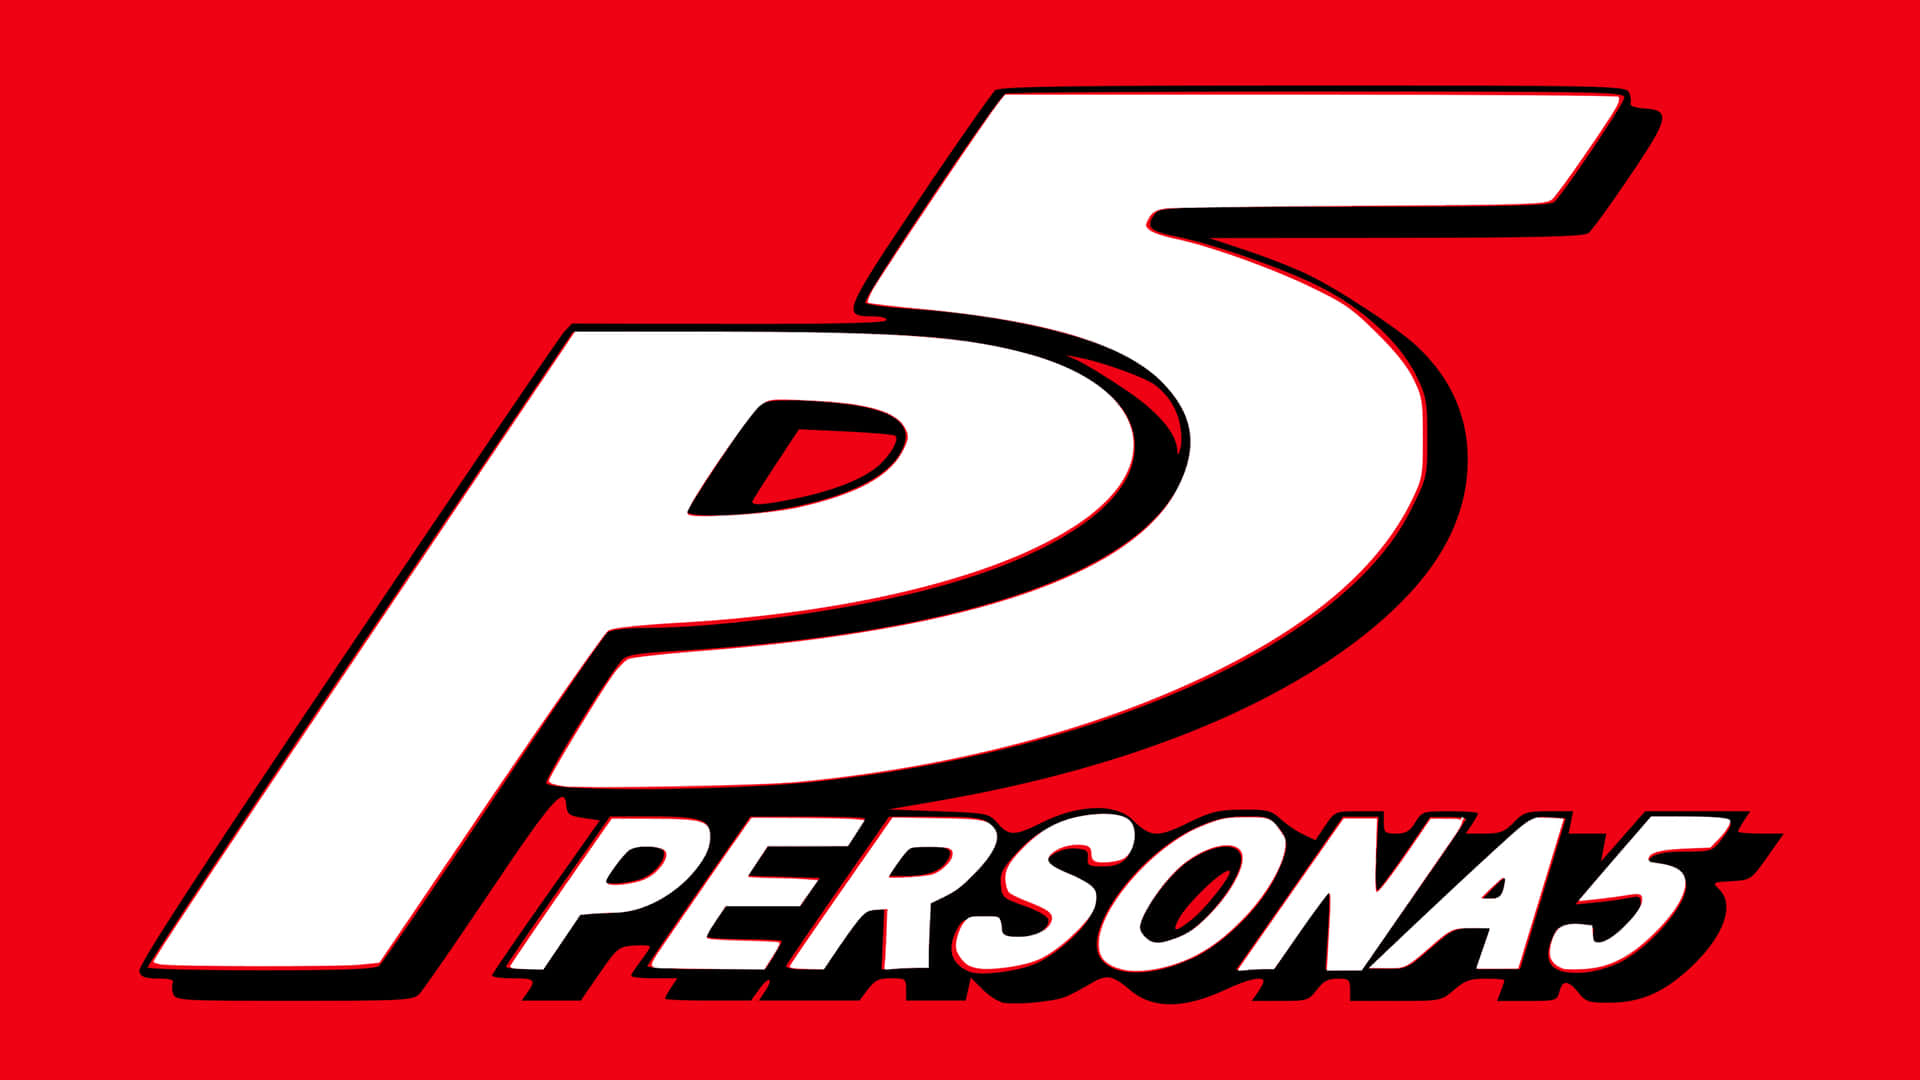 Persona5: Det Ikoniske Empati For Dit Hjerte Og Sind. Wallpaper